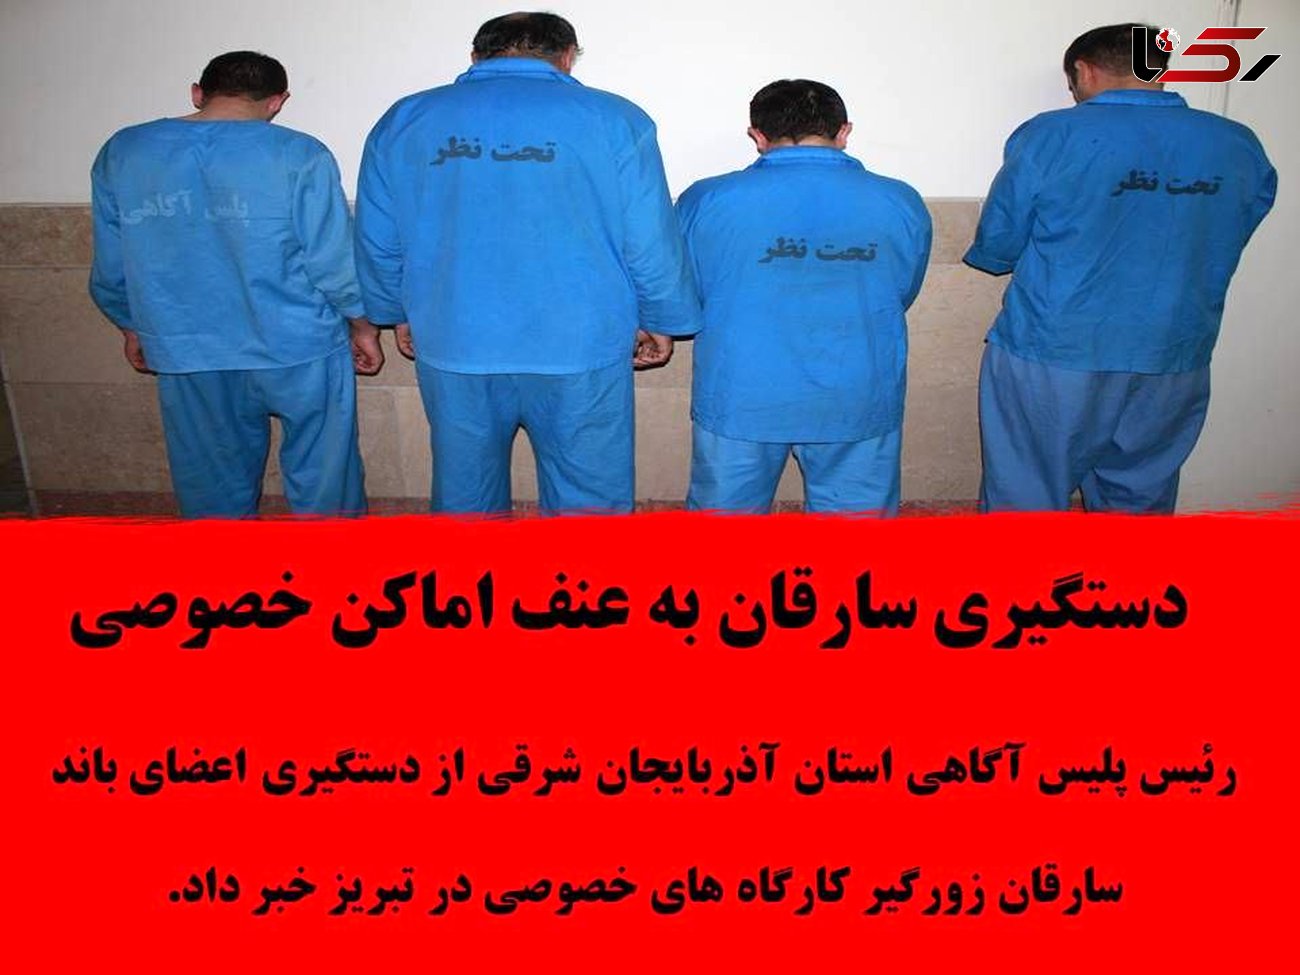 حمله دزدان قداره کش به یک کارگاه  در تبریز + عکس